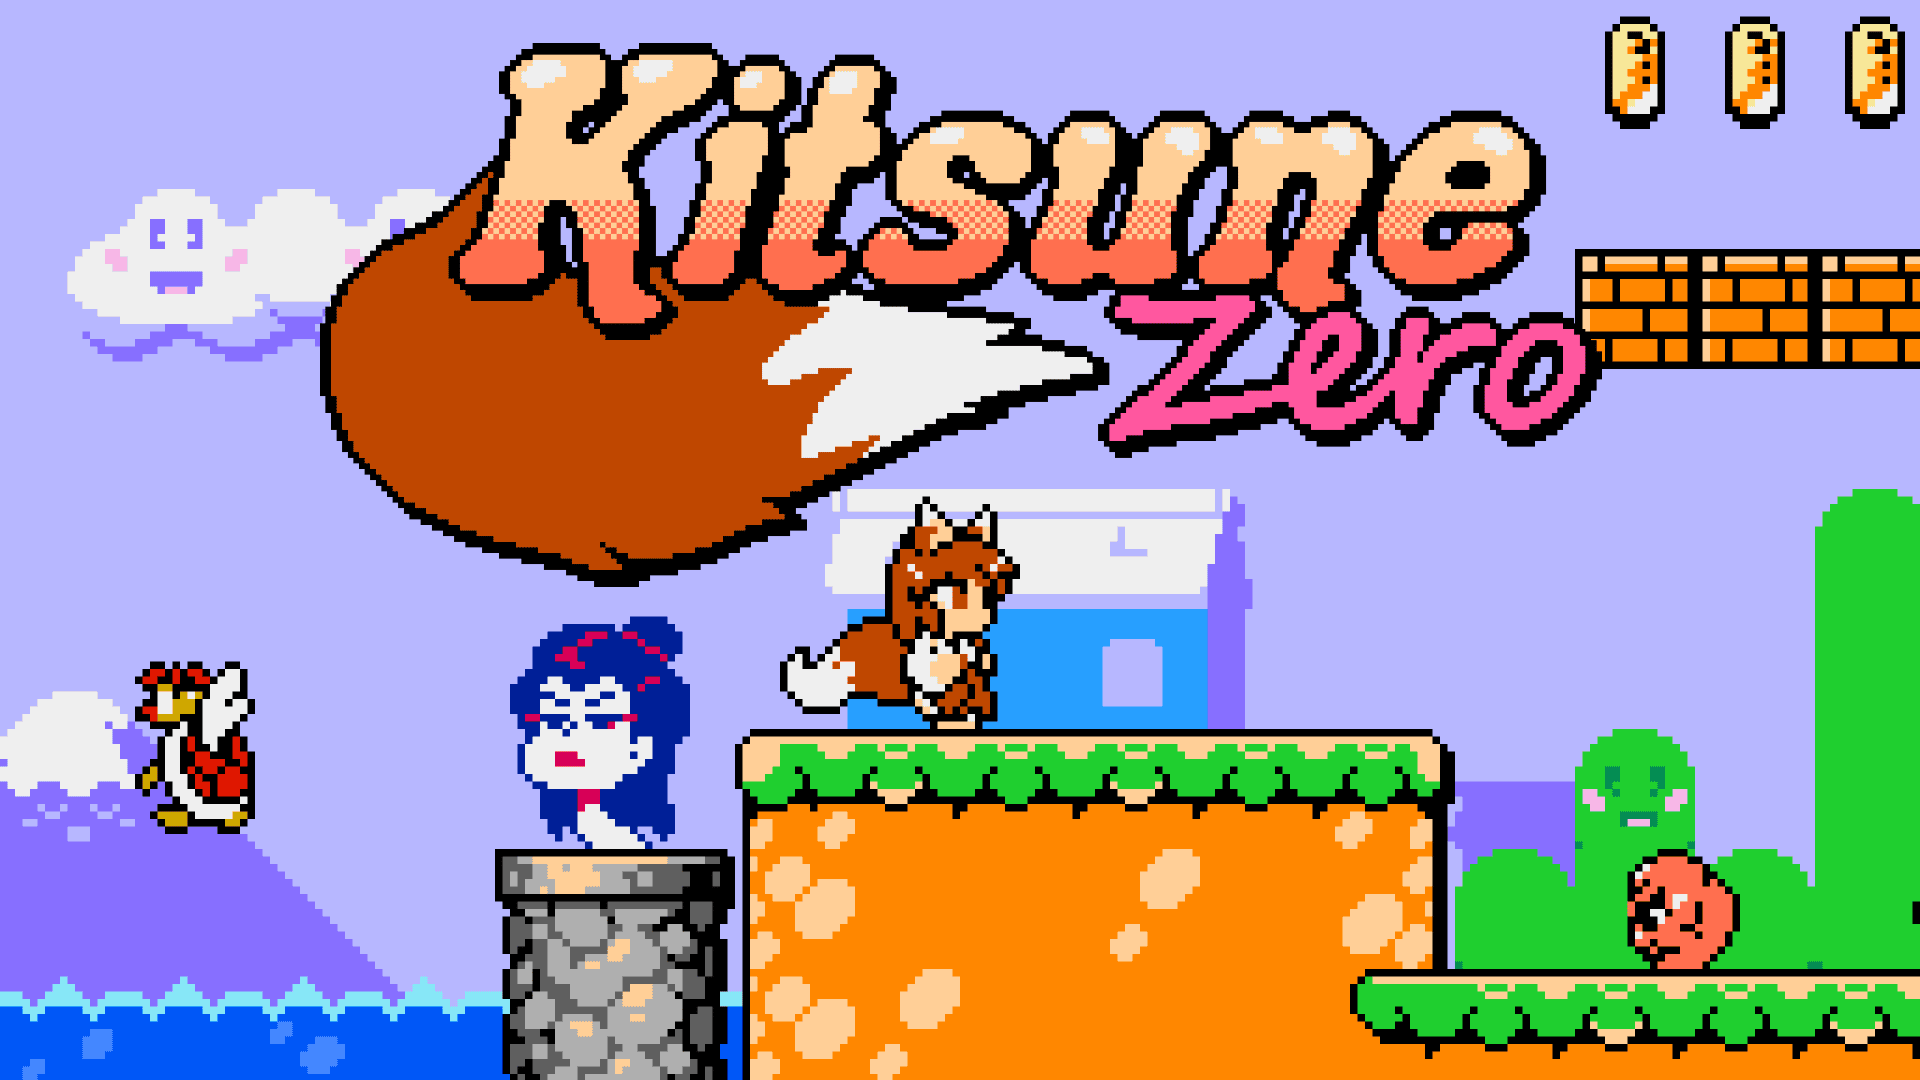 Kitsune Zero Key Art